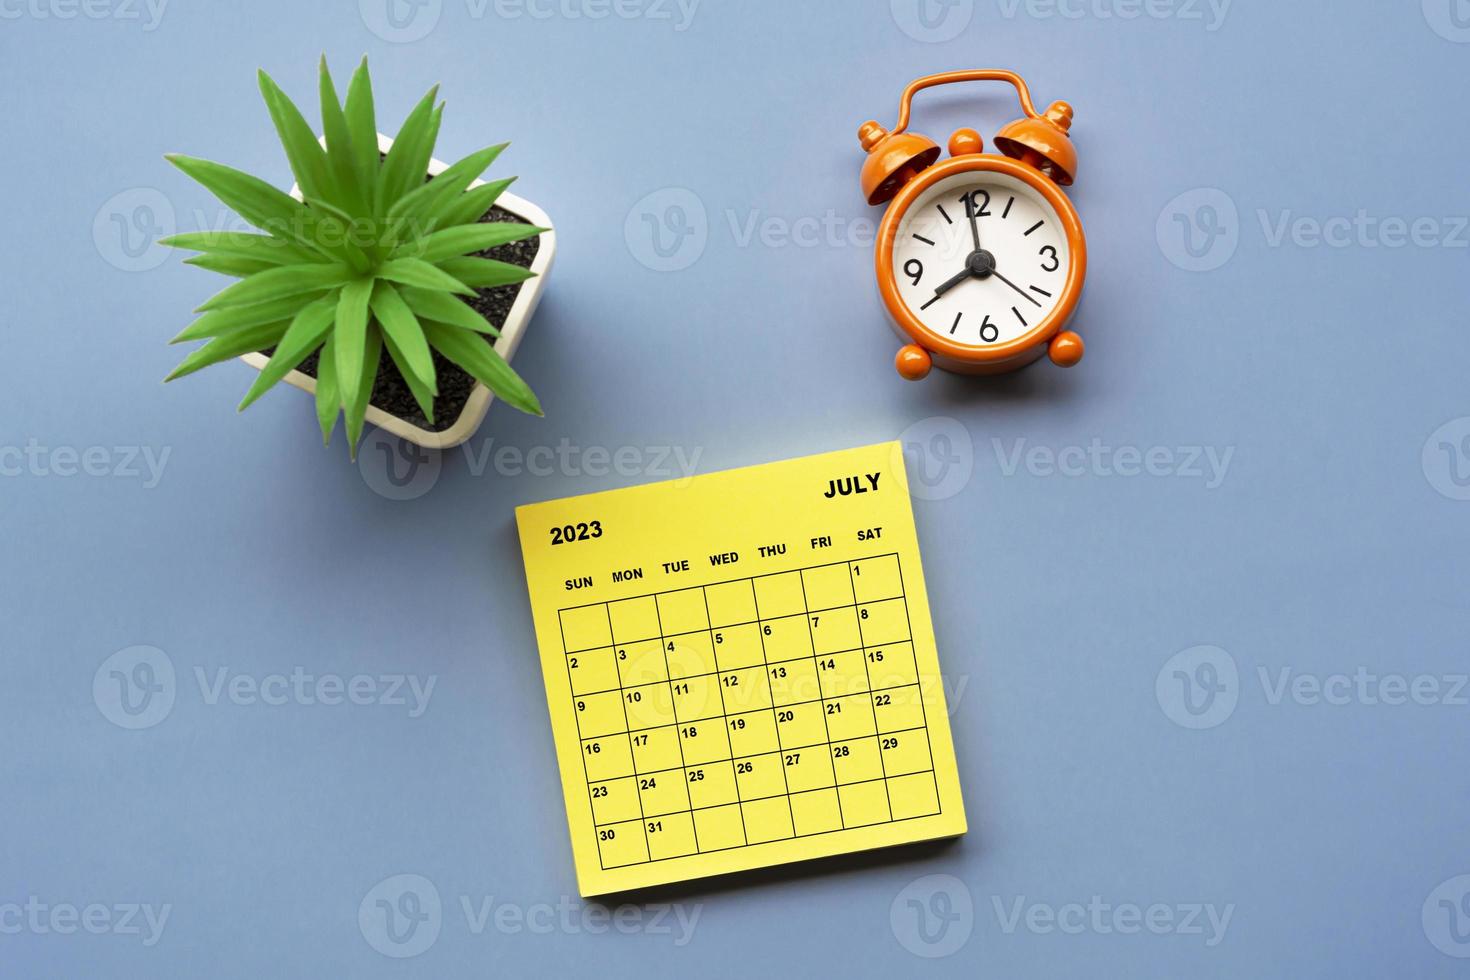 calendário de julho de 2023 em nota adesiva com despertador ajustado às 8 horas. foto